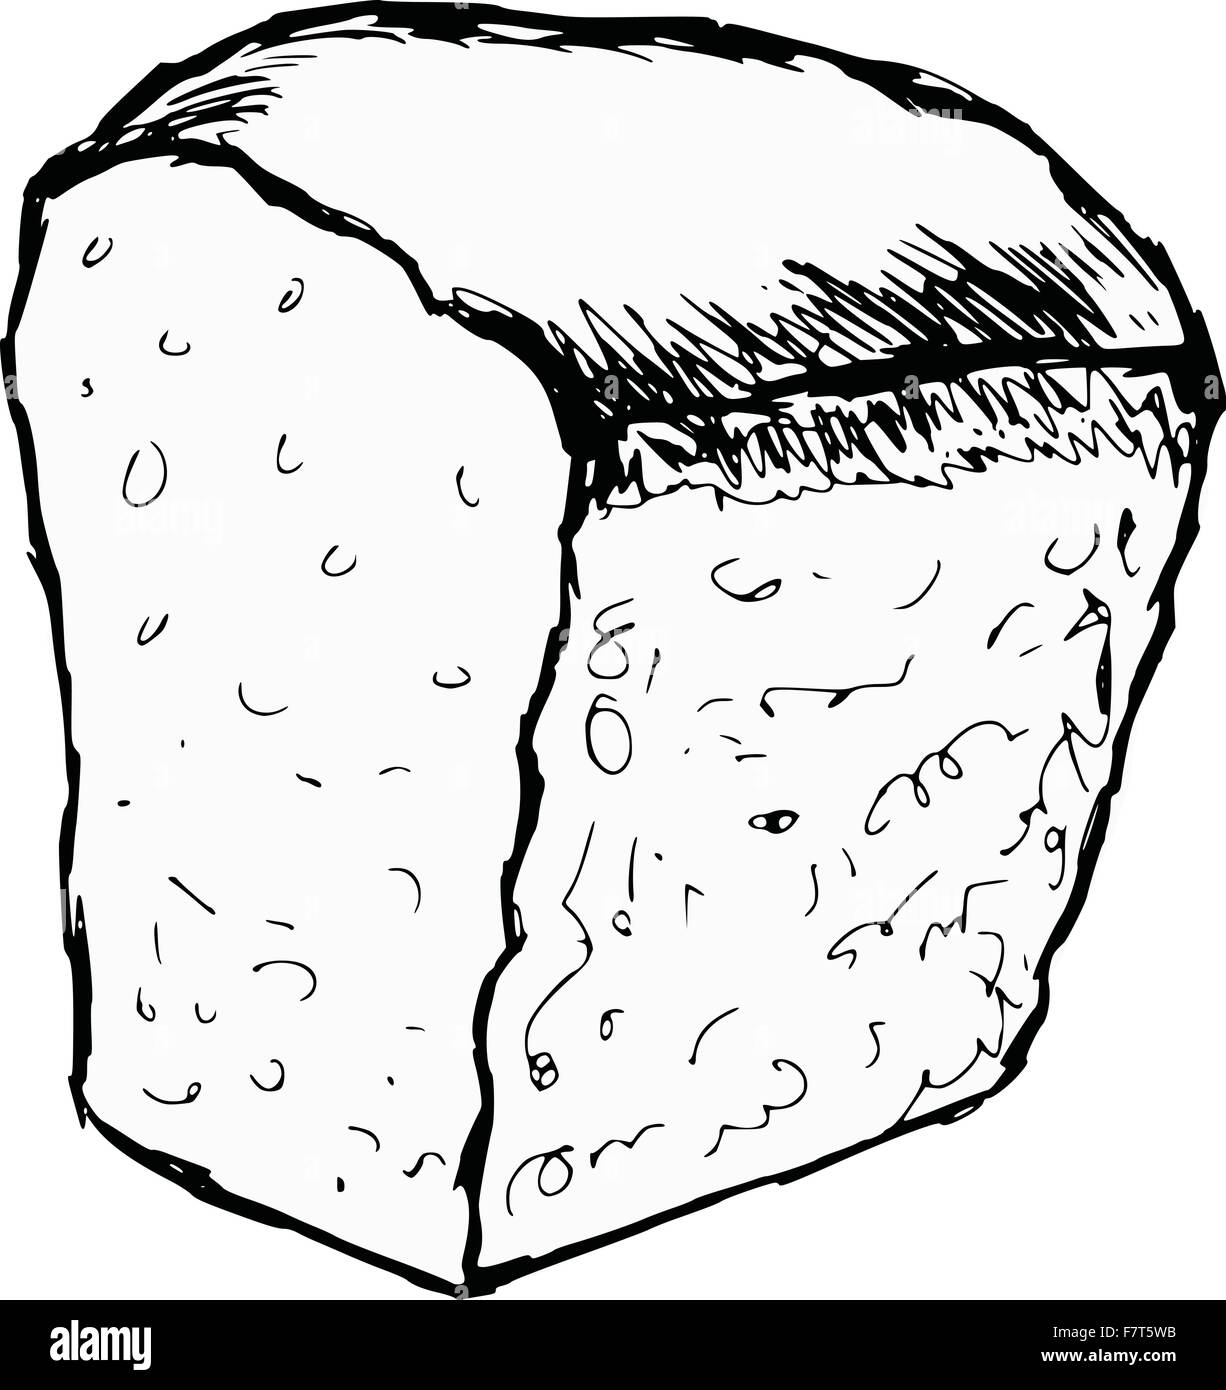 Раскраска Буханка хлеба для детей